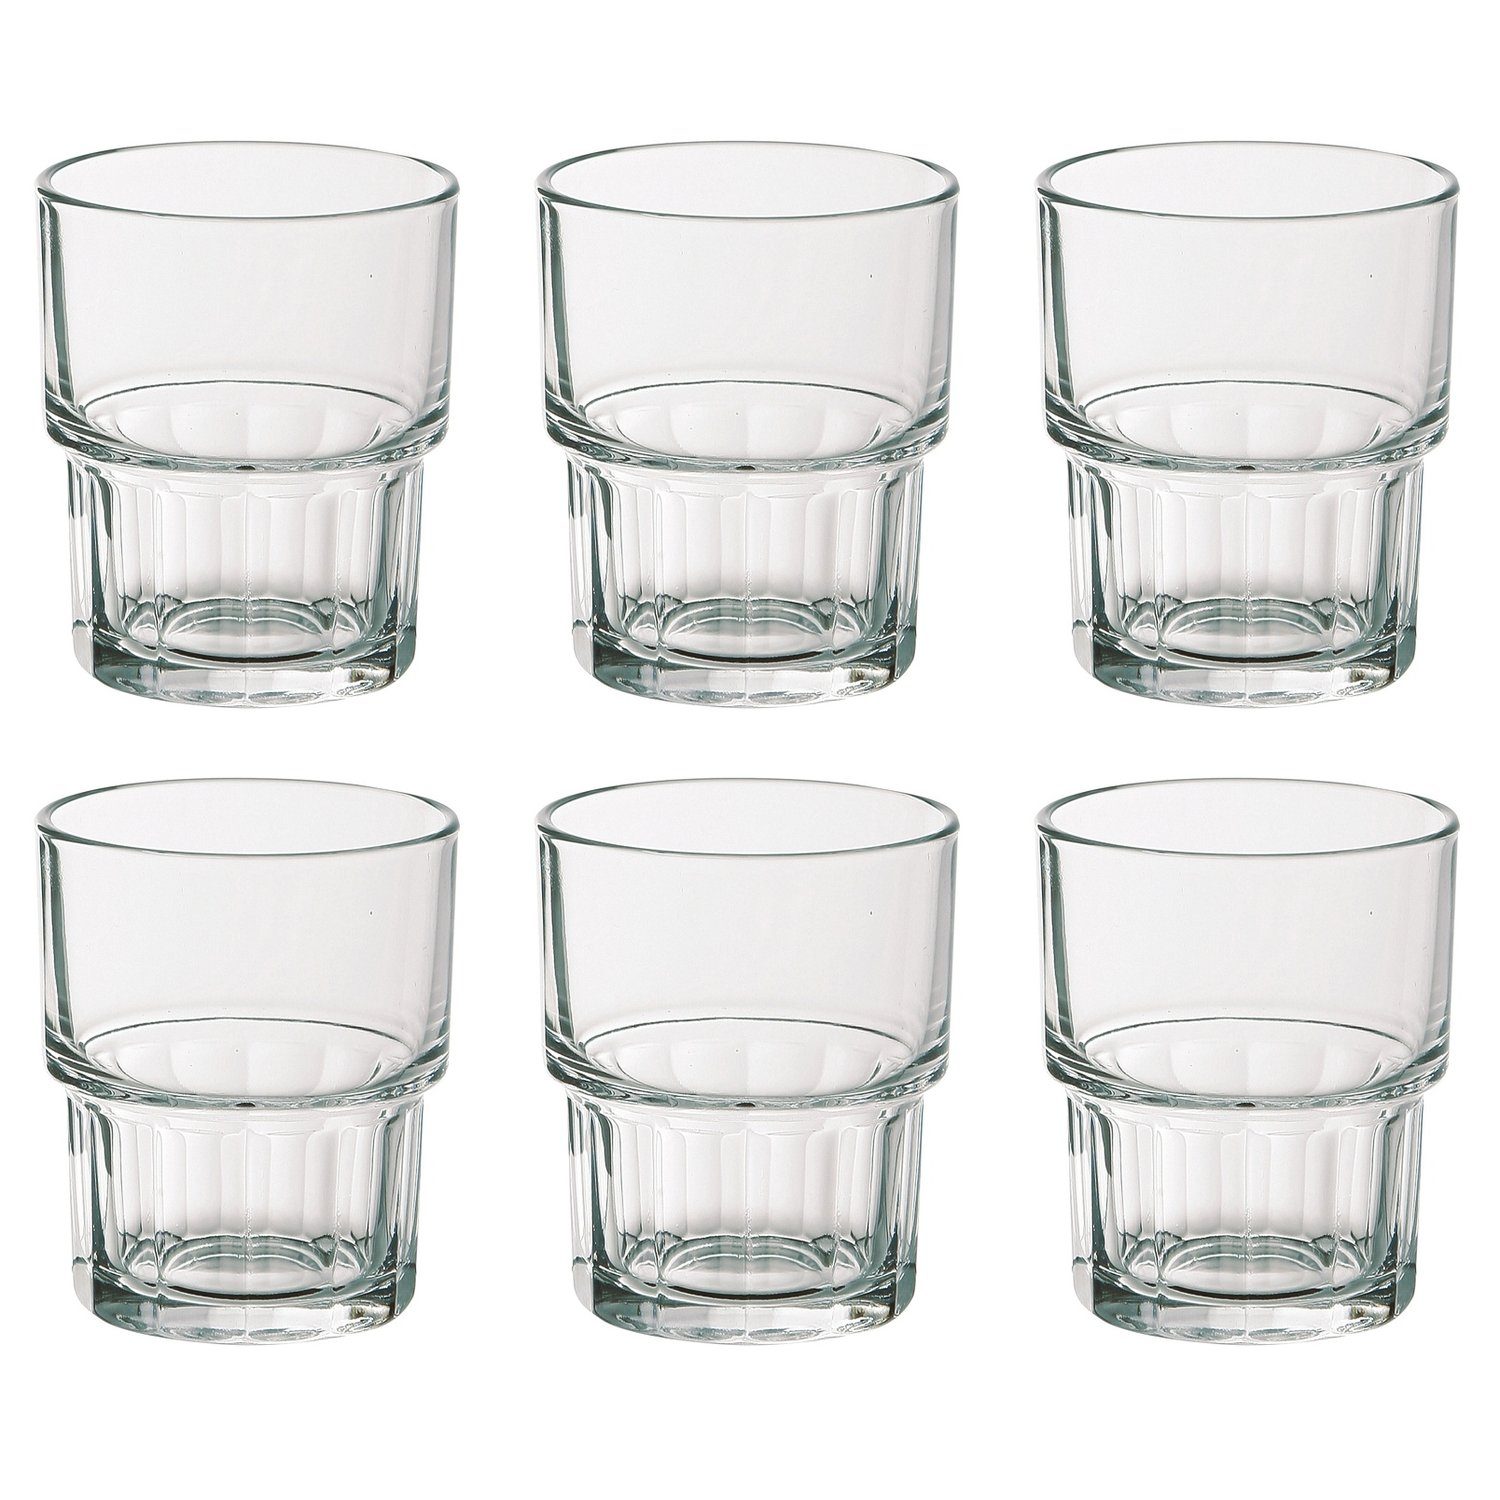 100 Wasserglas/Saftglas ml, EDUPLAY Becher Glas